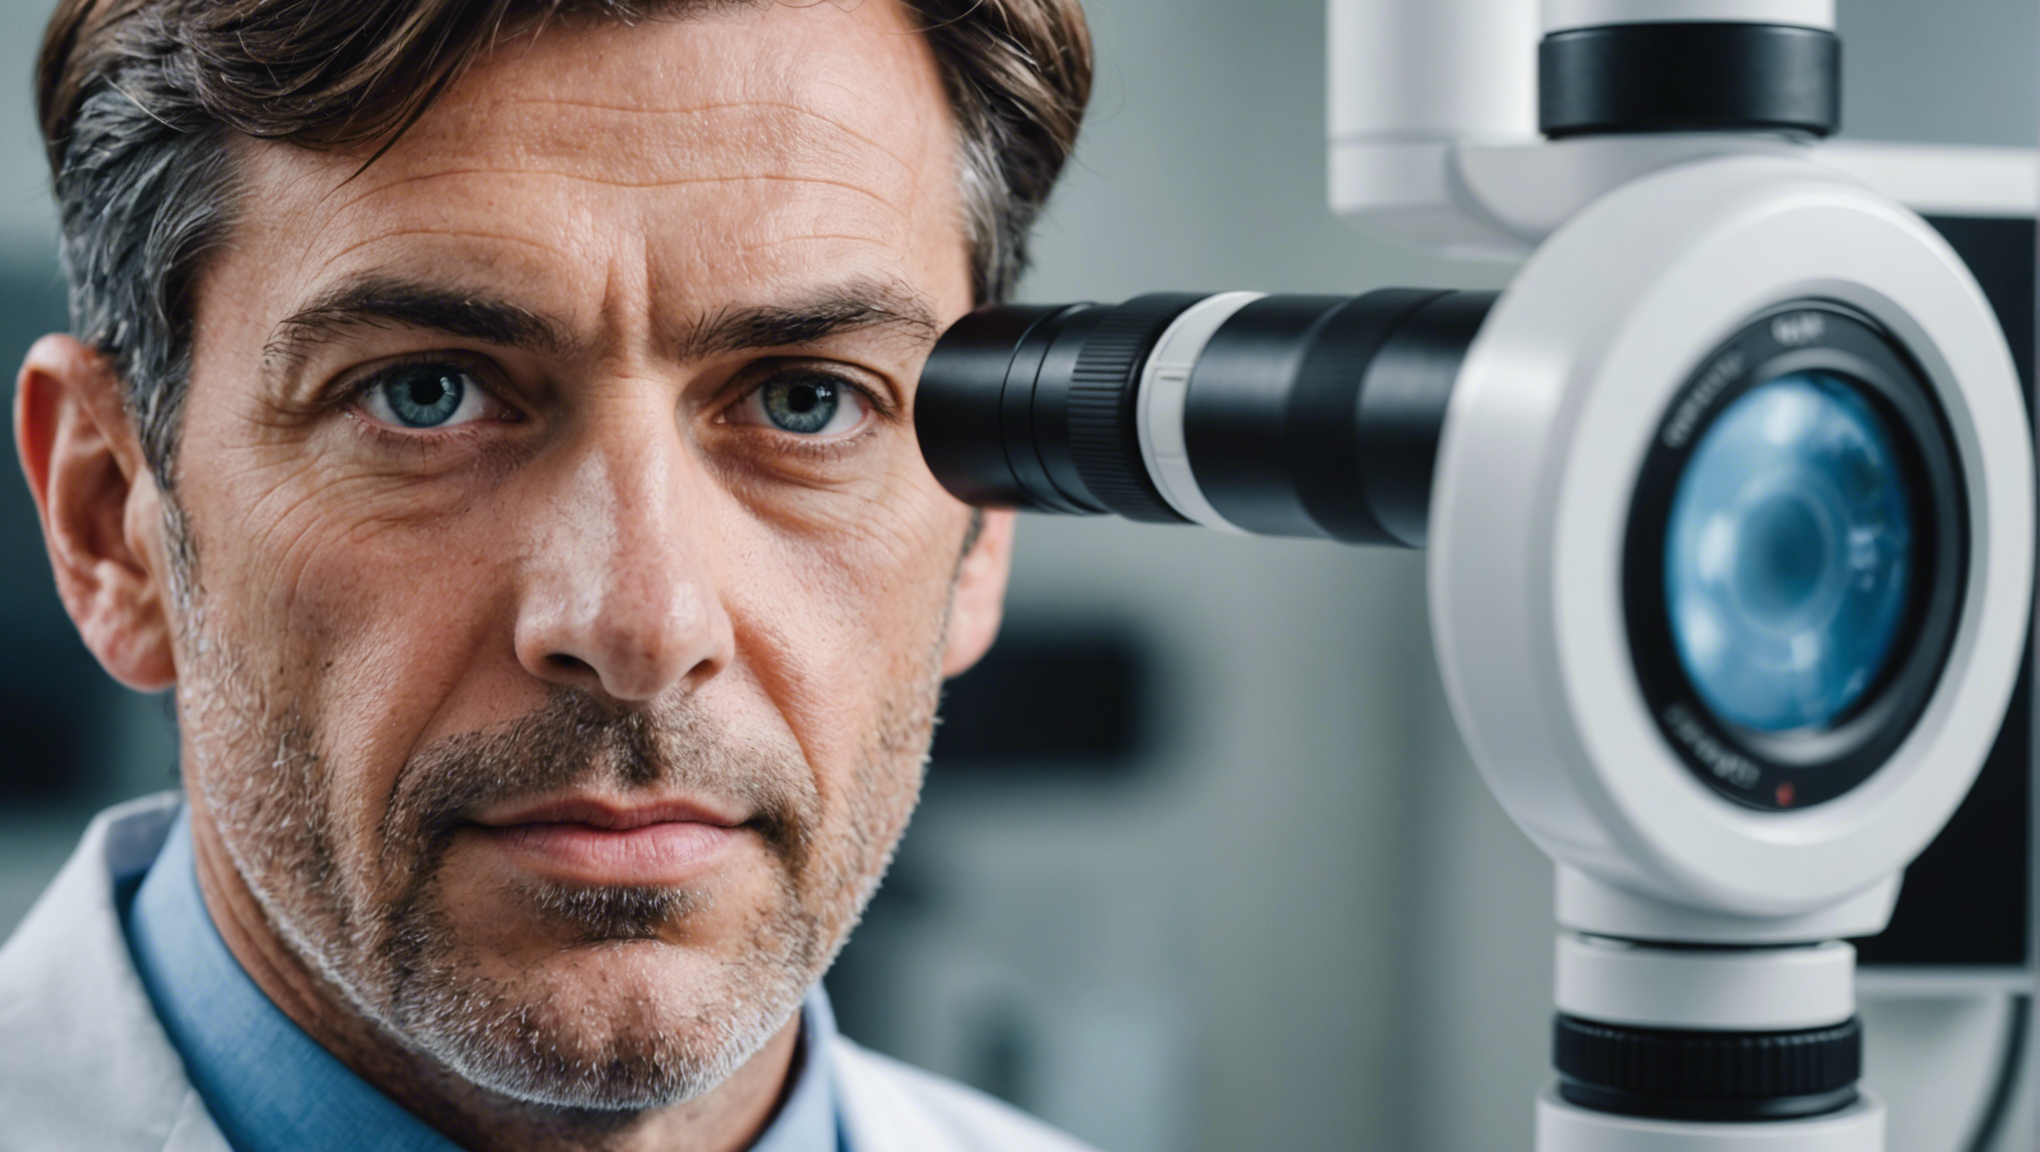 découvrez les dernières avancées en ophtalmologie et les progrès récents dans le domaine de la santé visuelle.